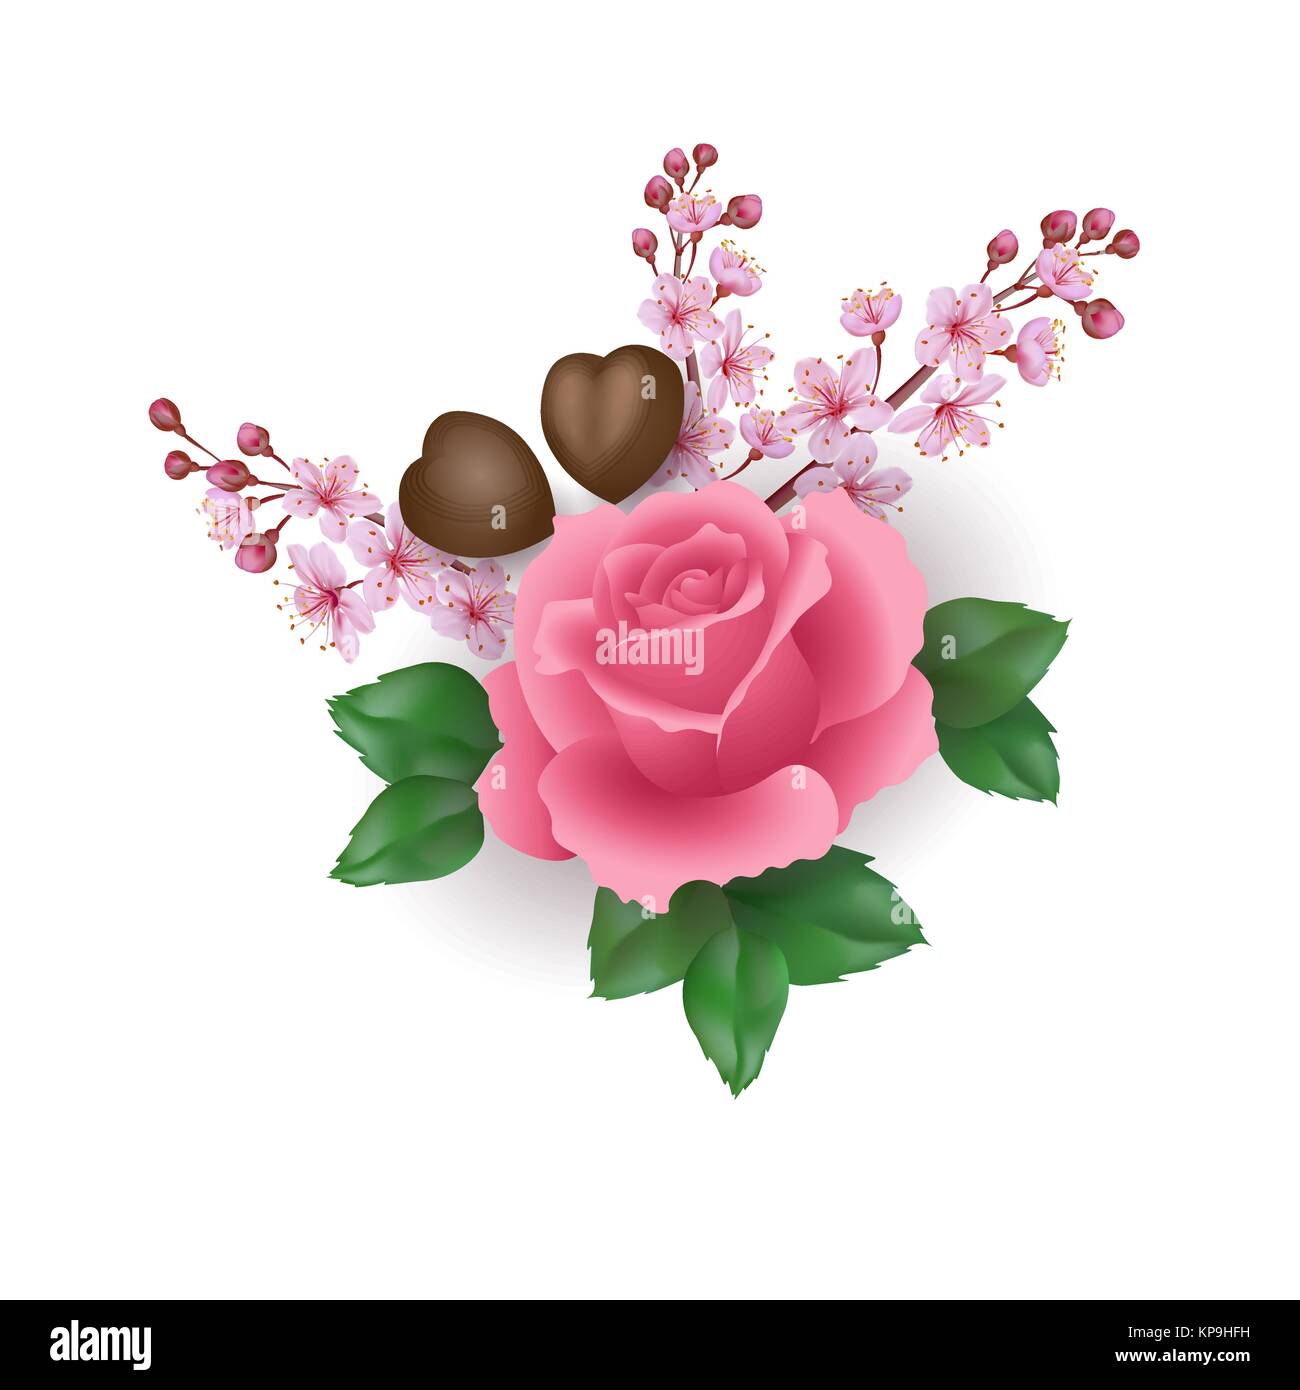 Realistische Valentinstag 3d Rose Blume Schokolade Sakura Blossom. Herzform Candy pink flower cherry Blütenblätter grüne Blätter. Urlaub vorhanden Romantisches Datum Geschenk Vector Illustration Stock Vektor